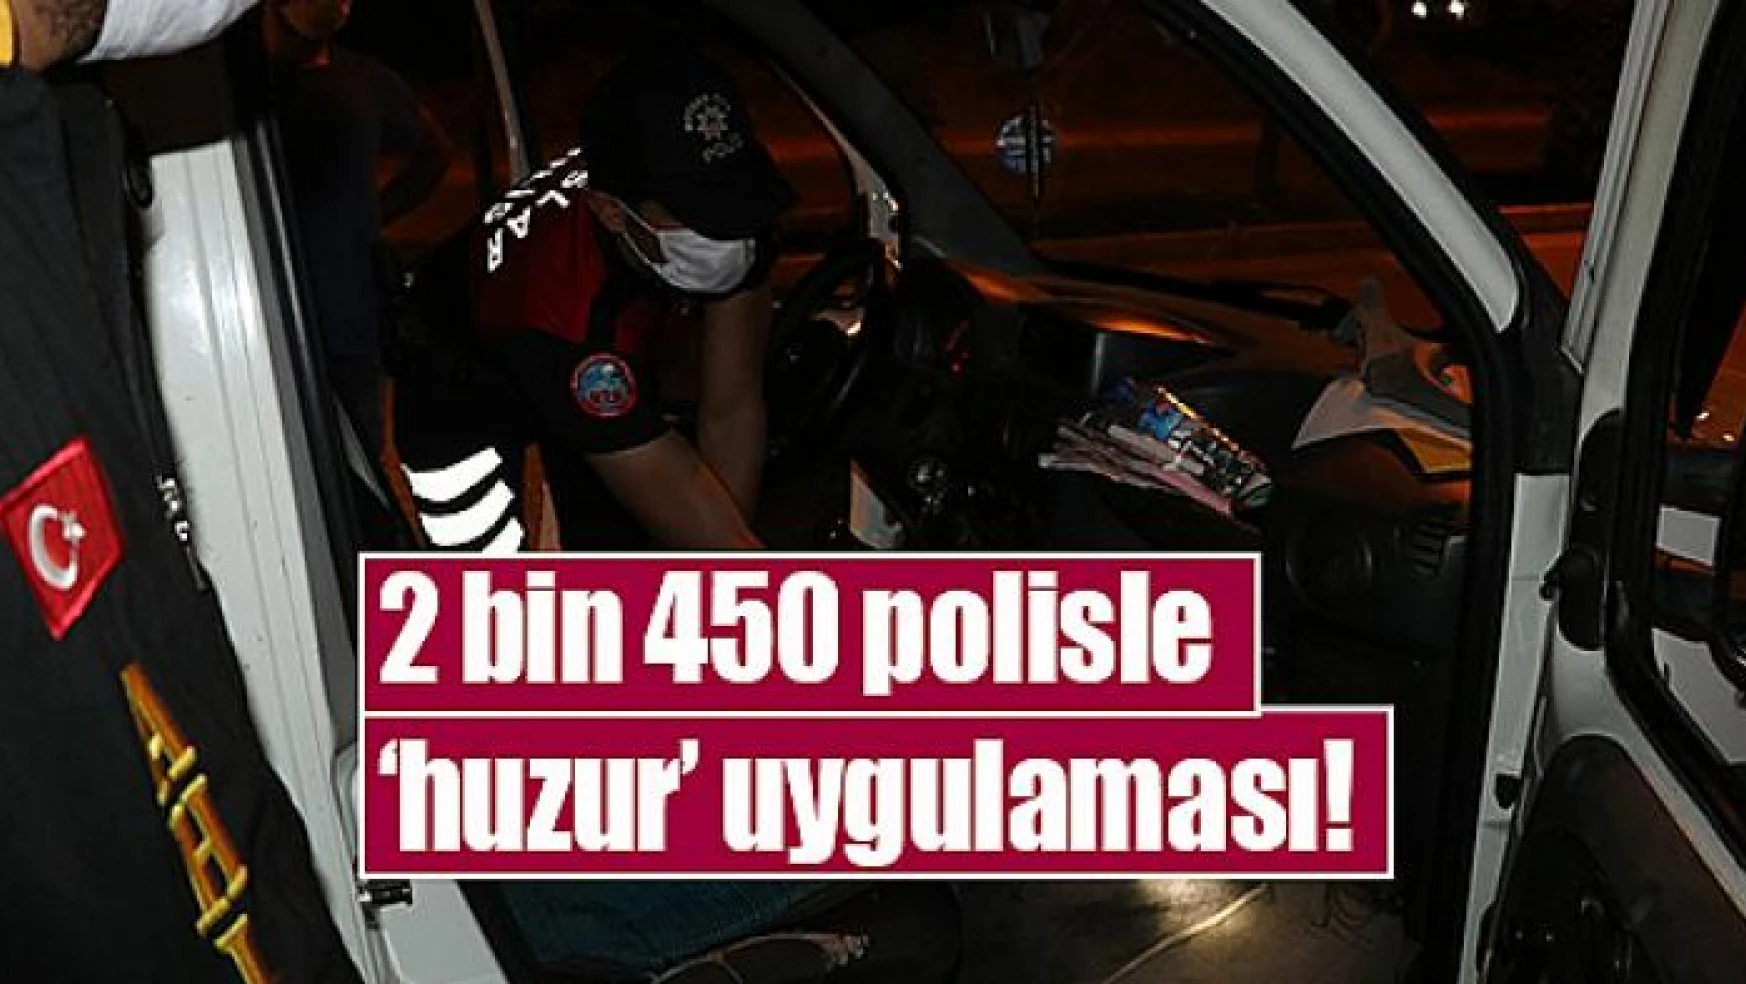 2 bin 450 polisle 'huzur' uygulaması